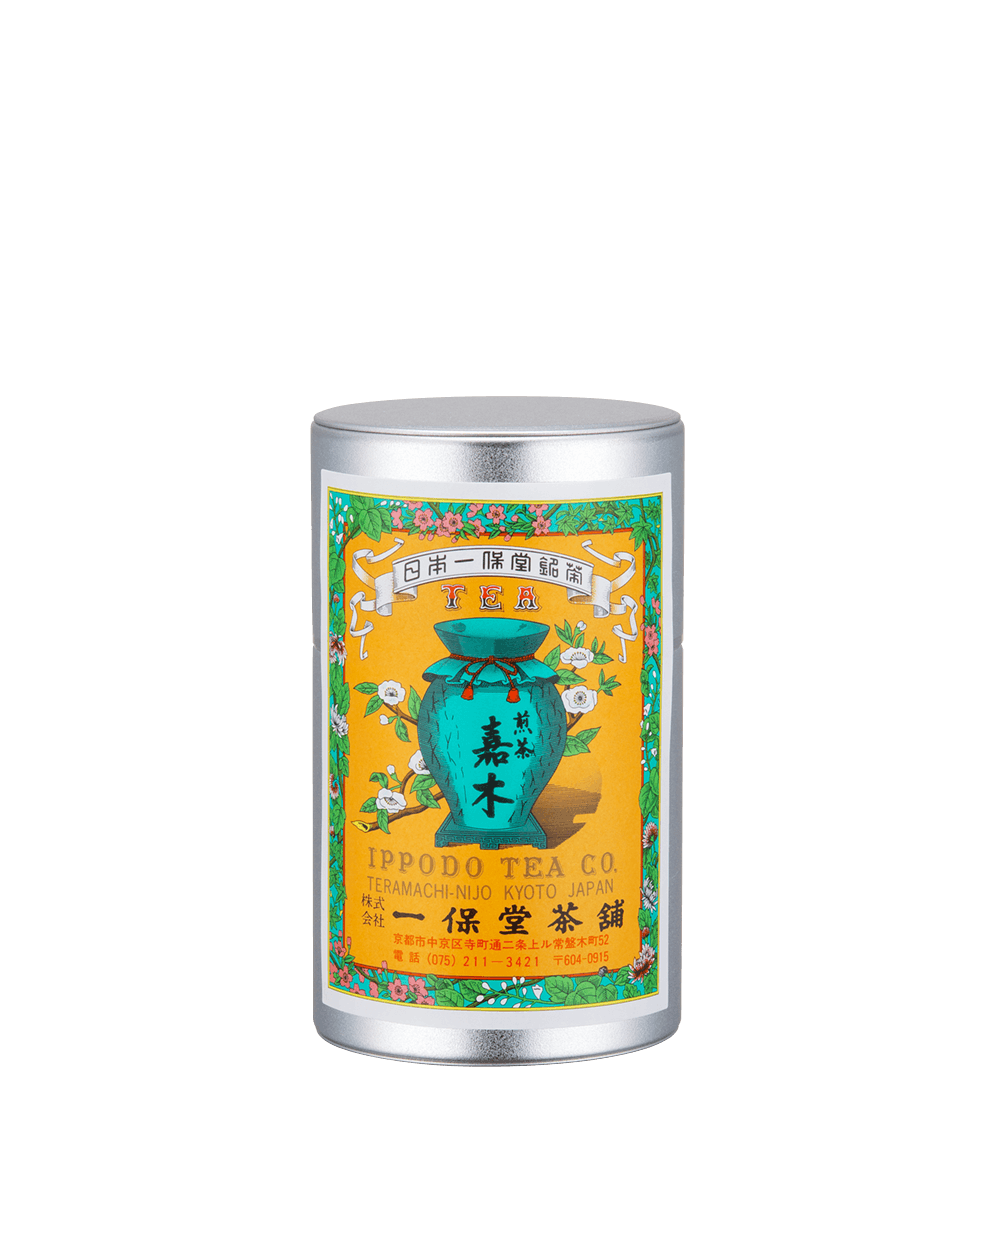 煎茶 嘉木(かぼく)小缶箱(90g) – 一保堂茶舗